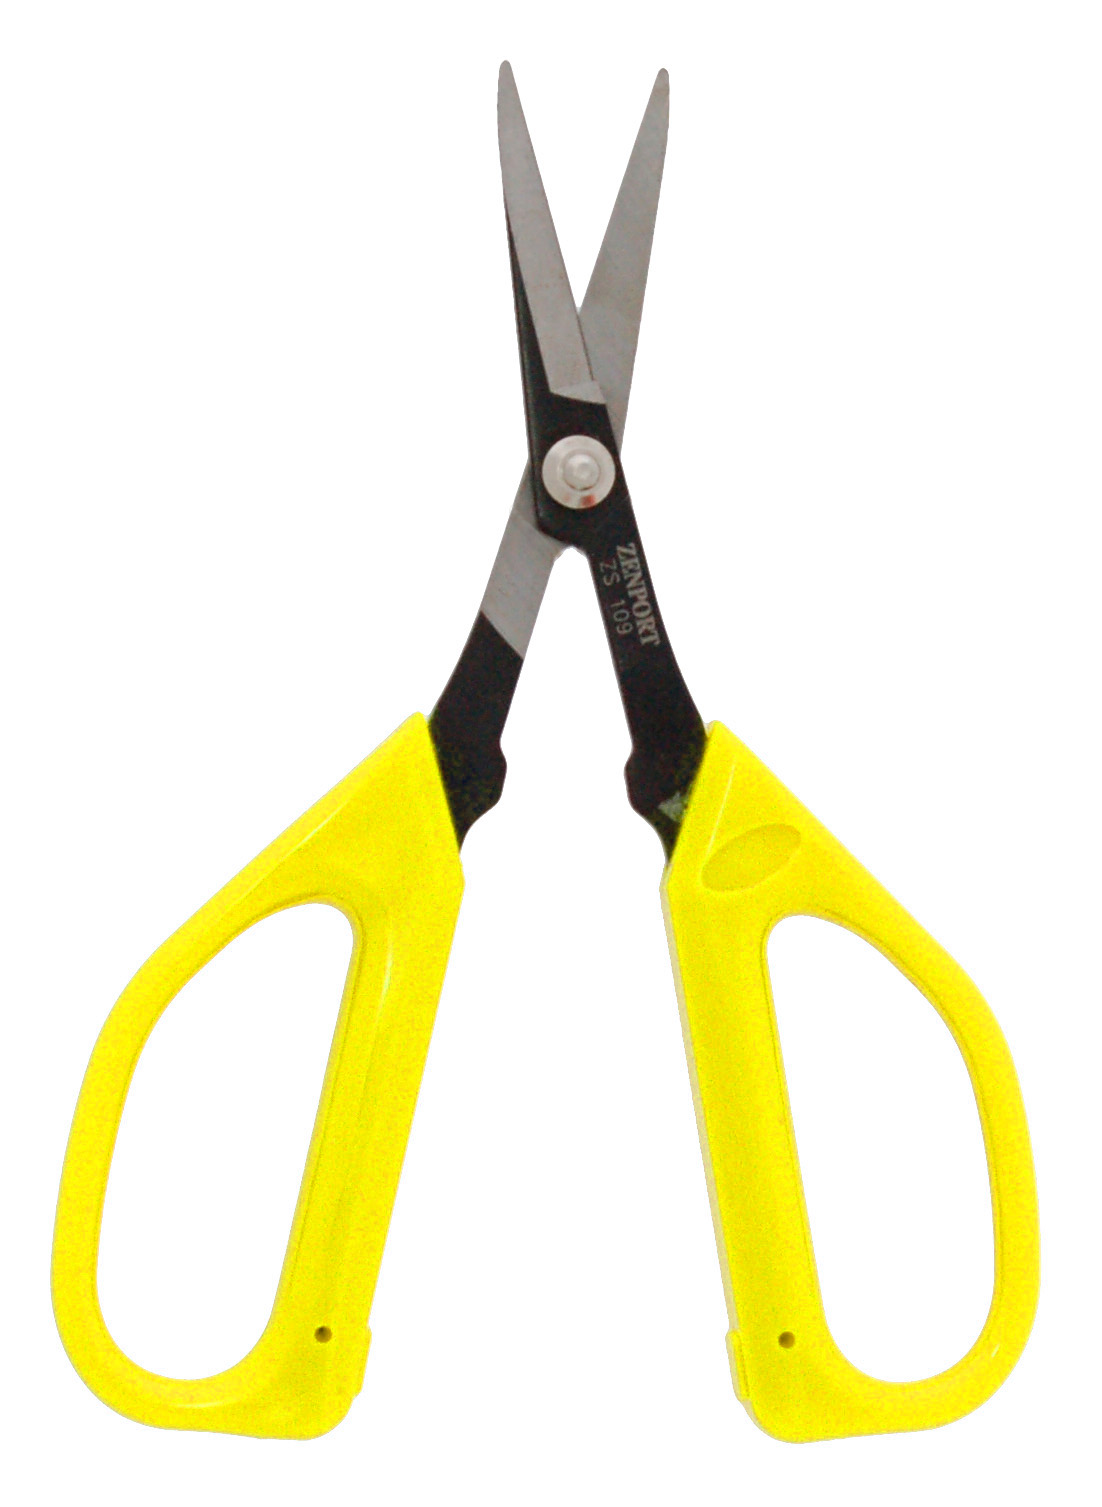 Zenport Scissors ZS109B Ergonomic Bent Handle Deluxe Trimming Scissors, Garden, Fruit, Grape, 6.5-Inch Long